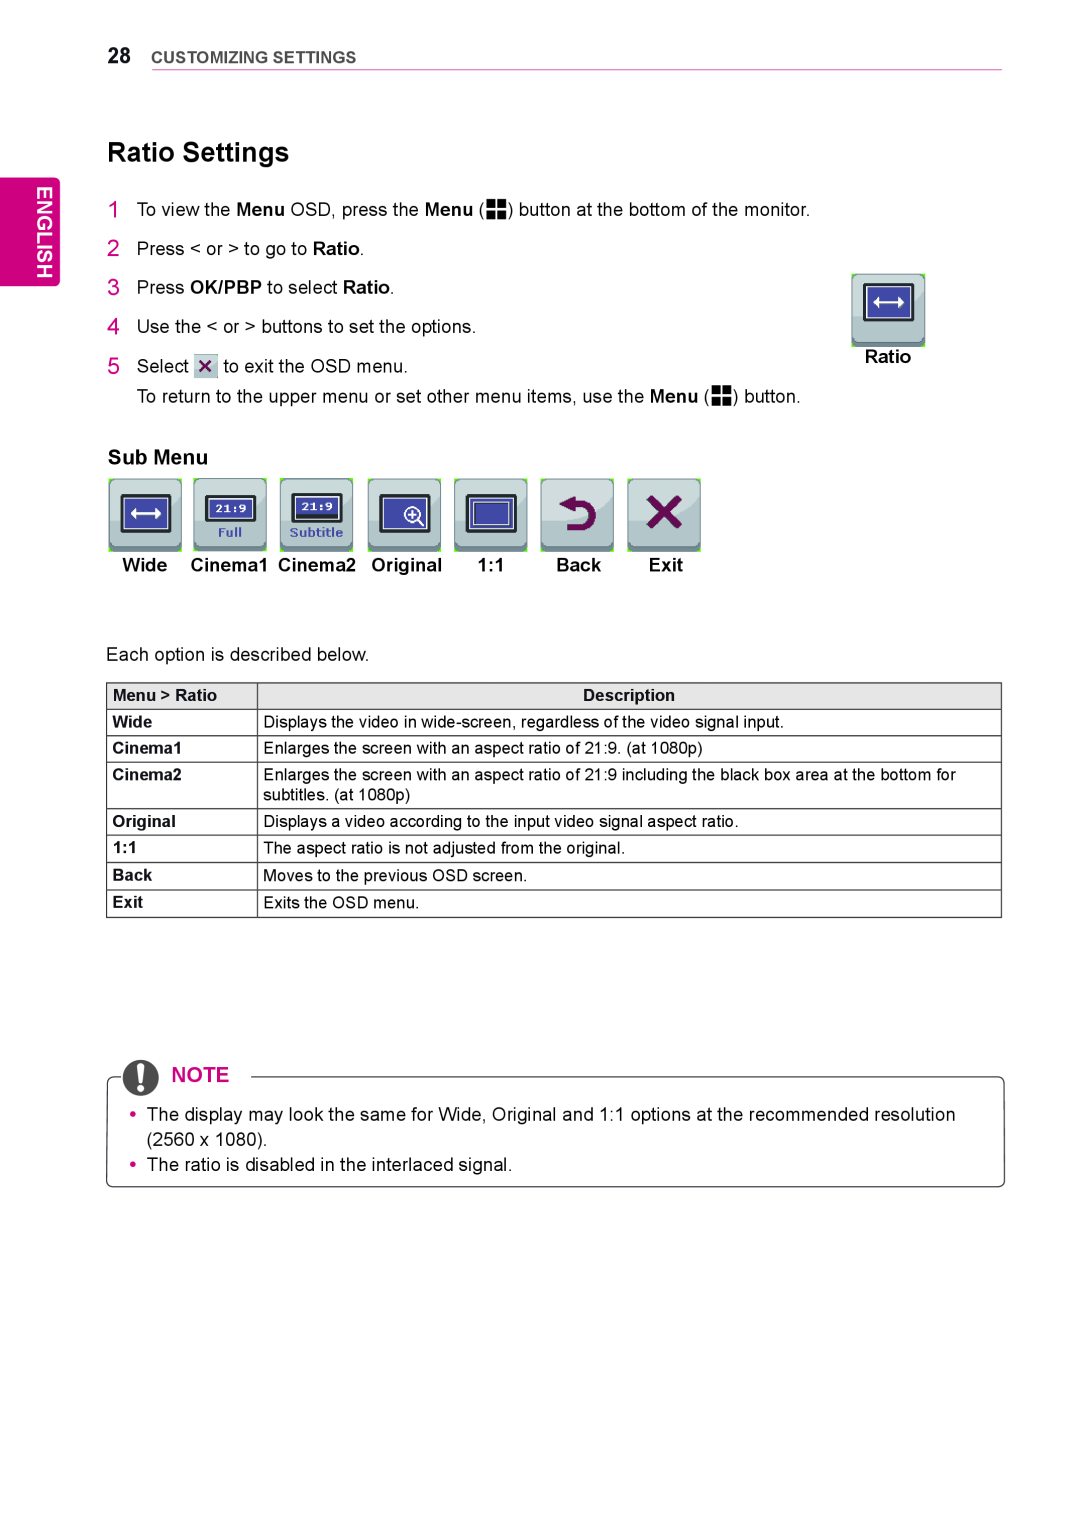 LG Electronics 29EA73, 29EB73 owner manual Ratio Settings, Sub Menu, English 